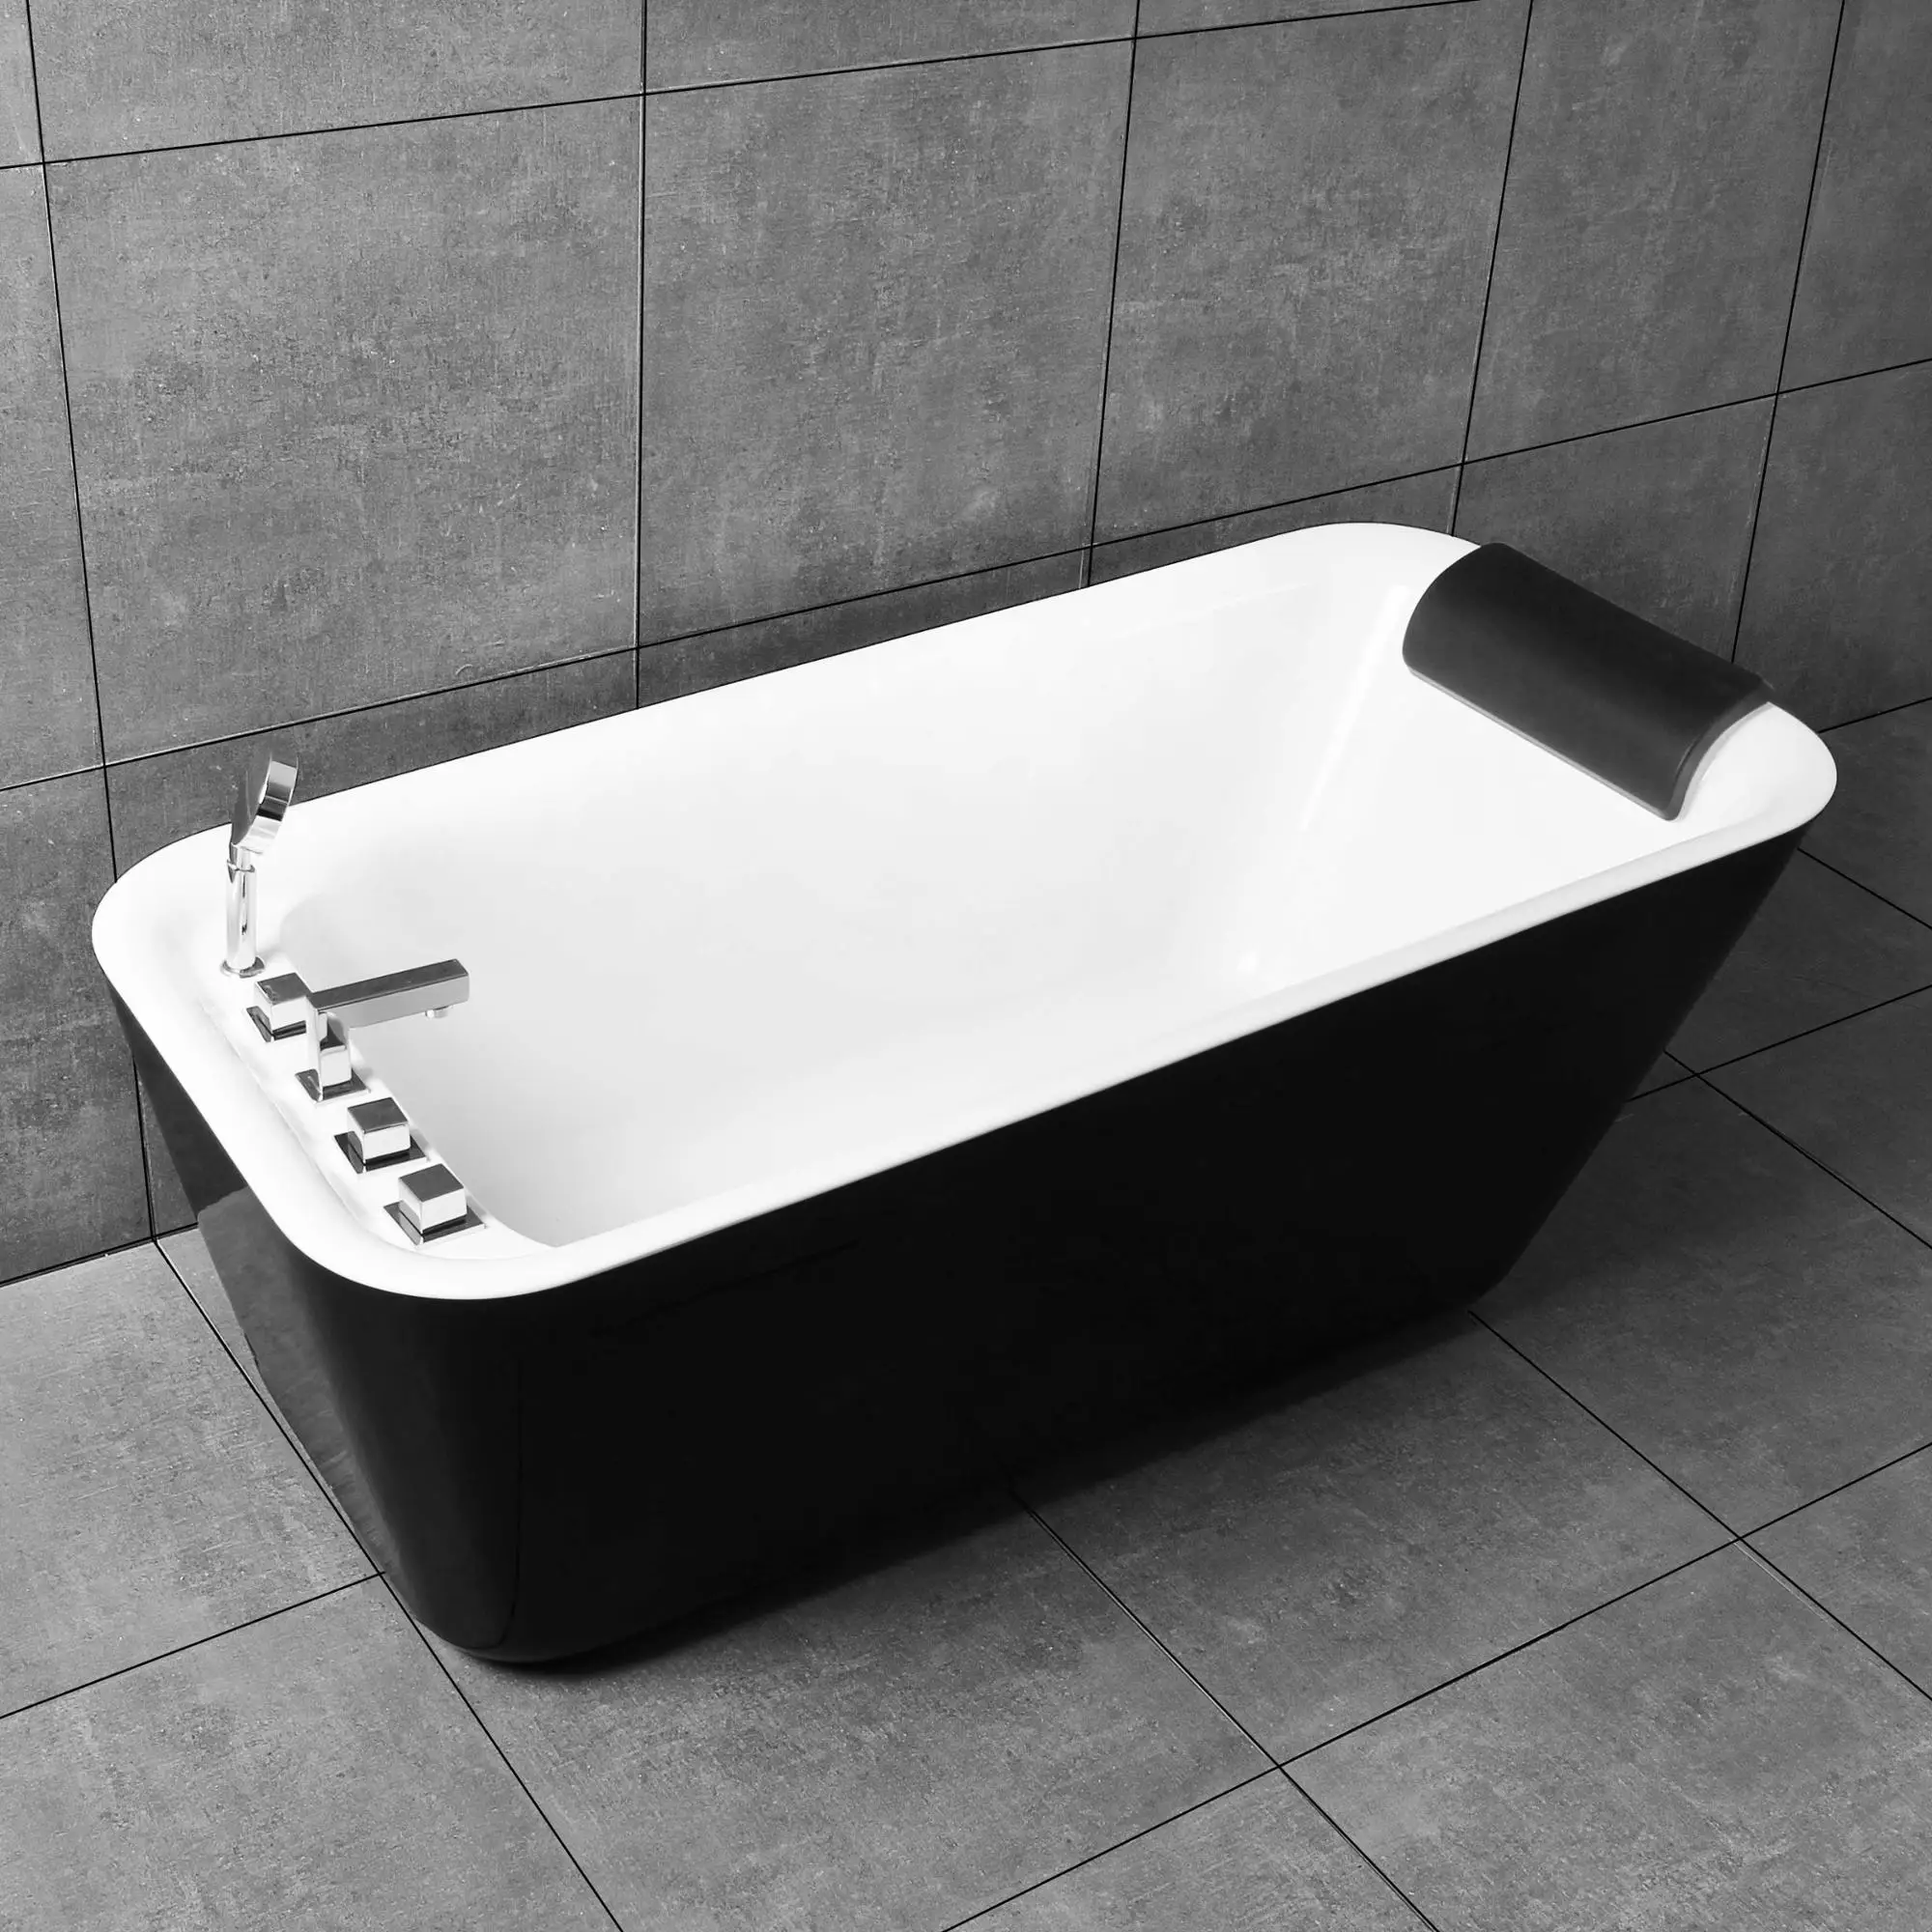 Камень мобильный Ванна черный bb ванной кран Цвет ванна Сделано в Китае